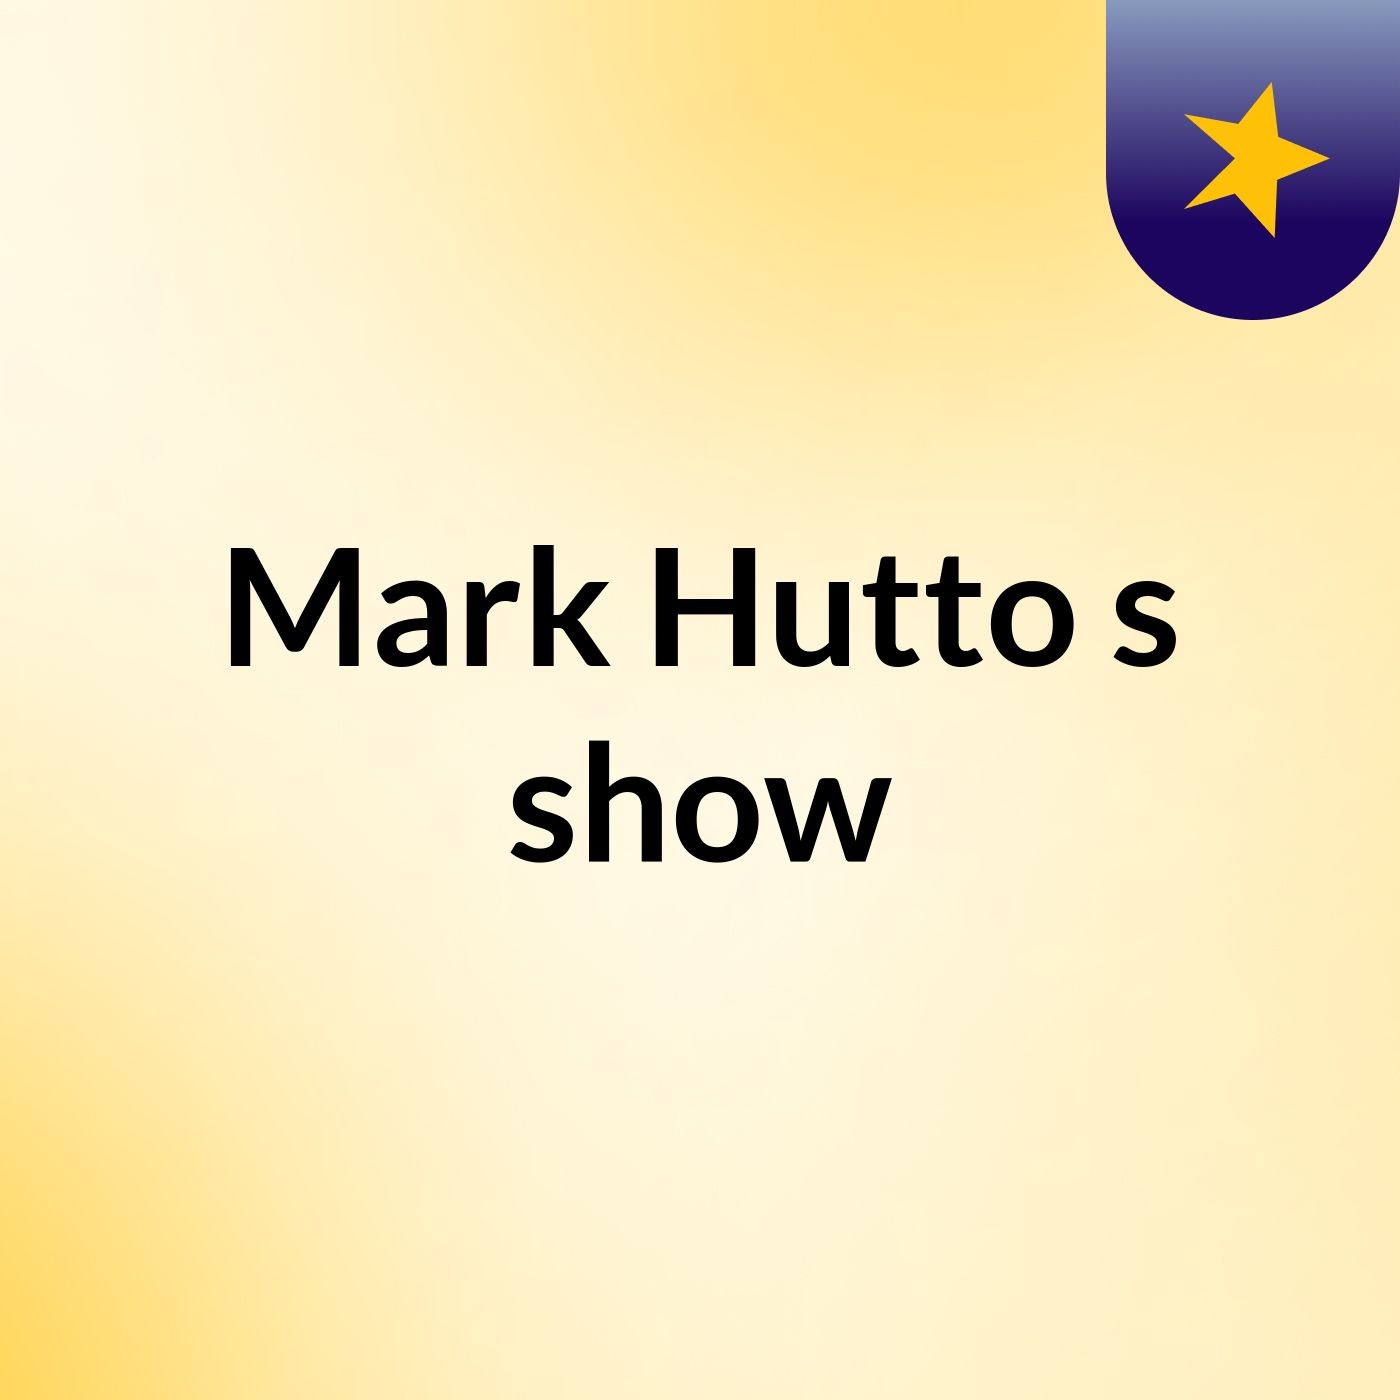 Episode 1 - Mark Hutto's show